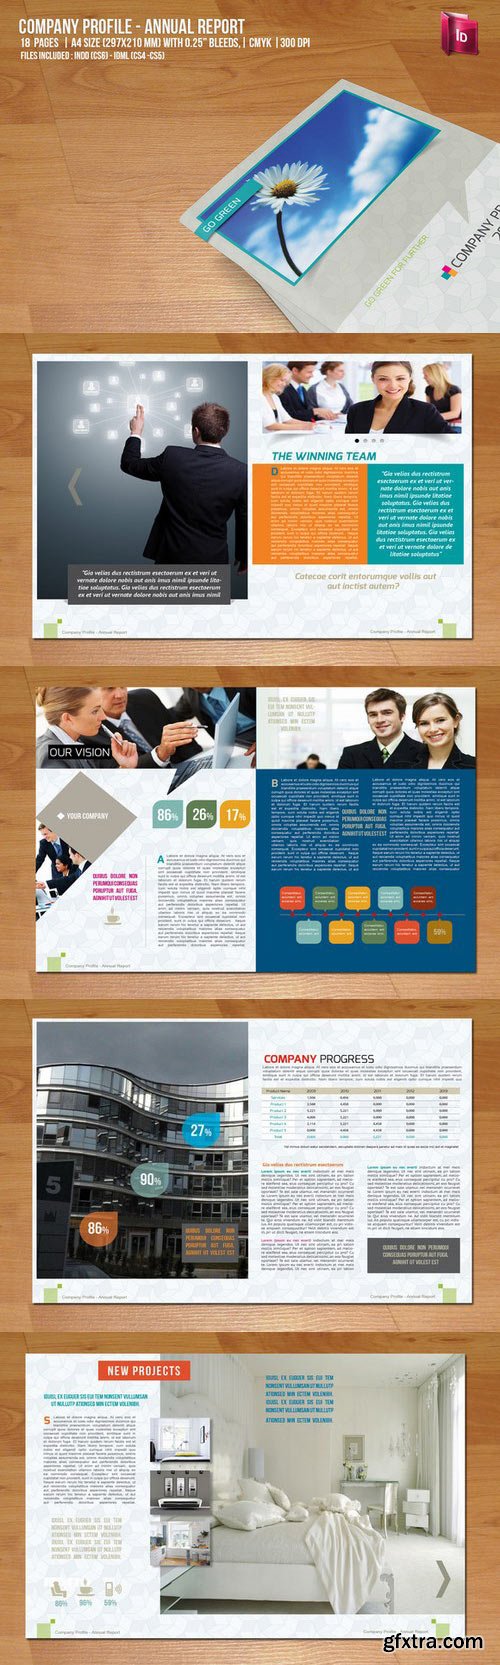 CM - Company Profile - Annual Report 43825